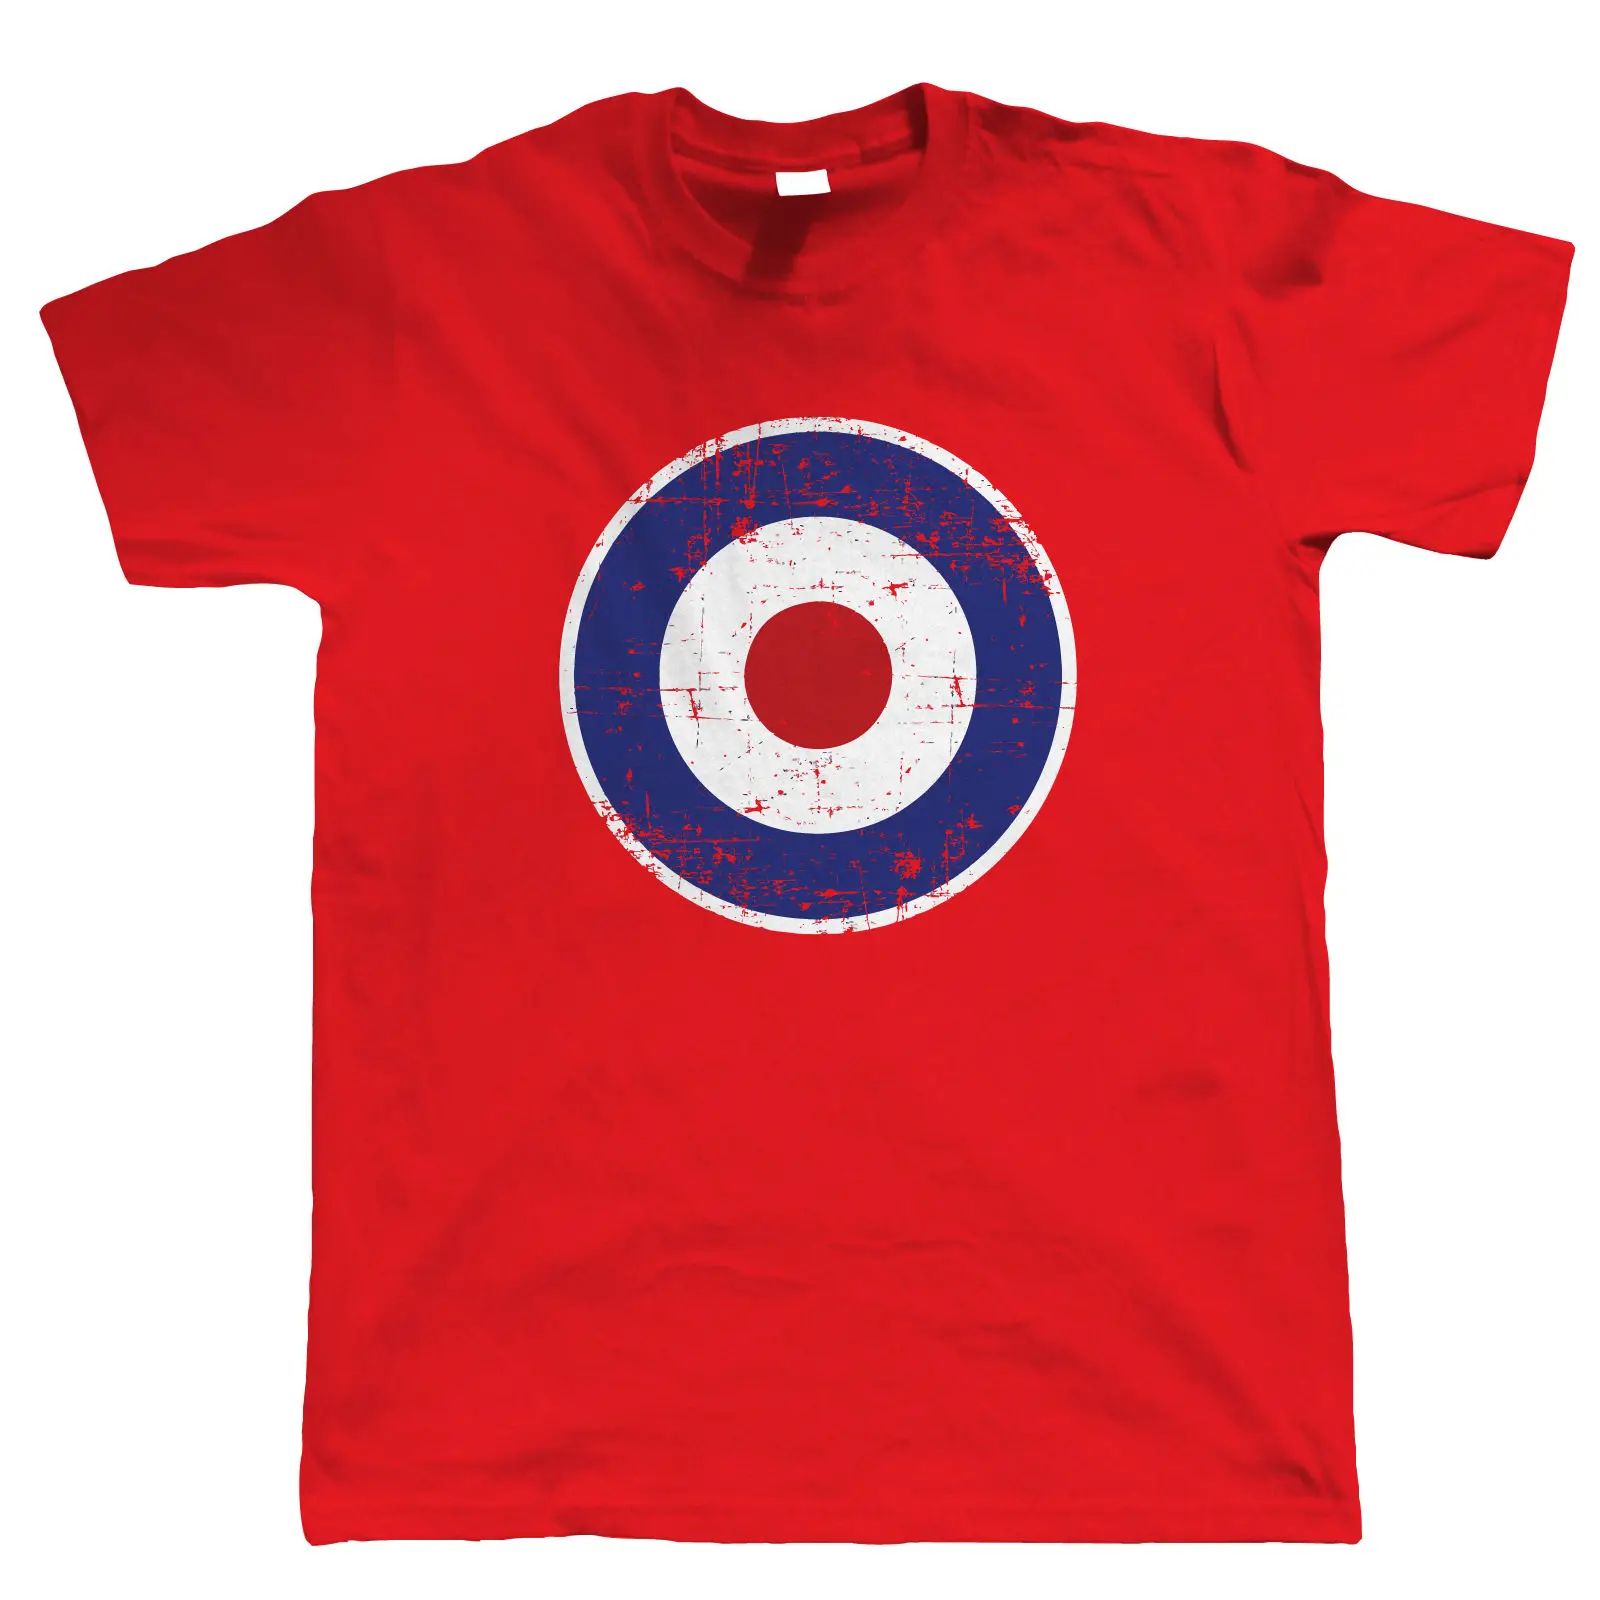 Горячая Распродажа, хлопок, Ретро модель RAF Target, Мужская футболка для скутера, подарок для папы